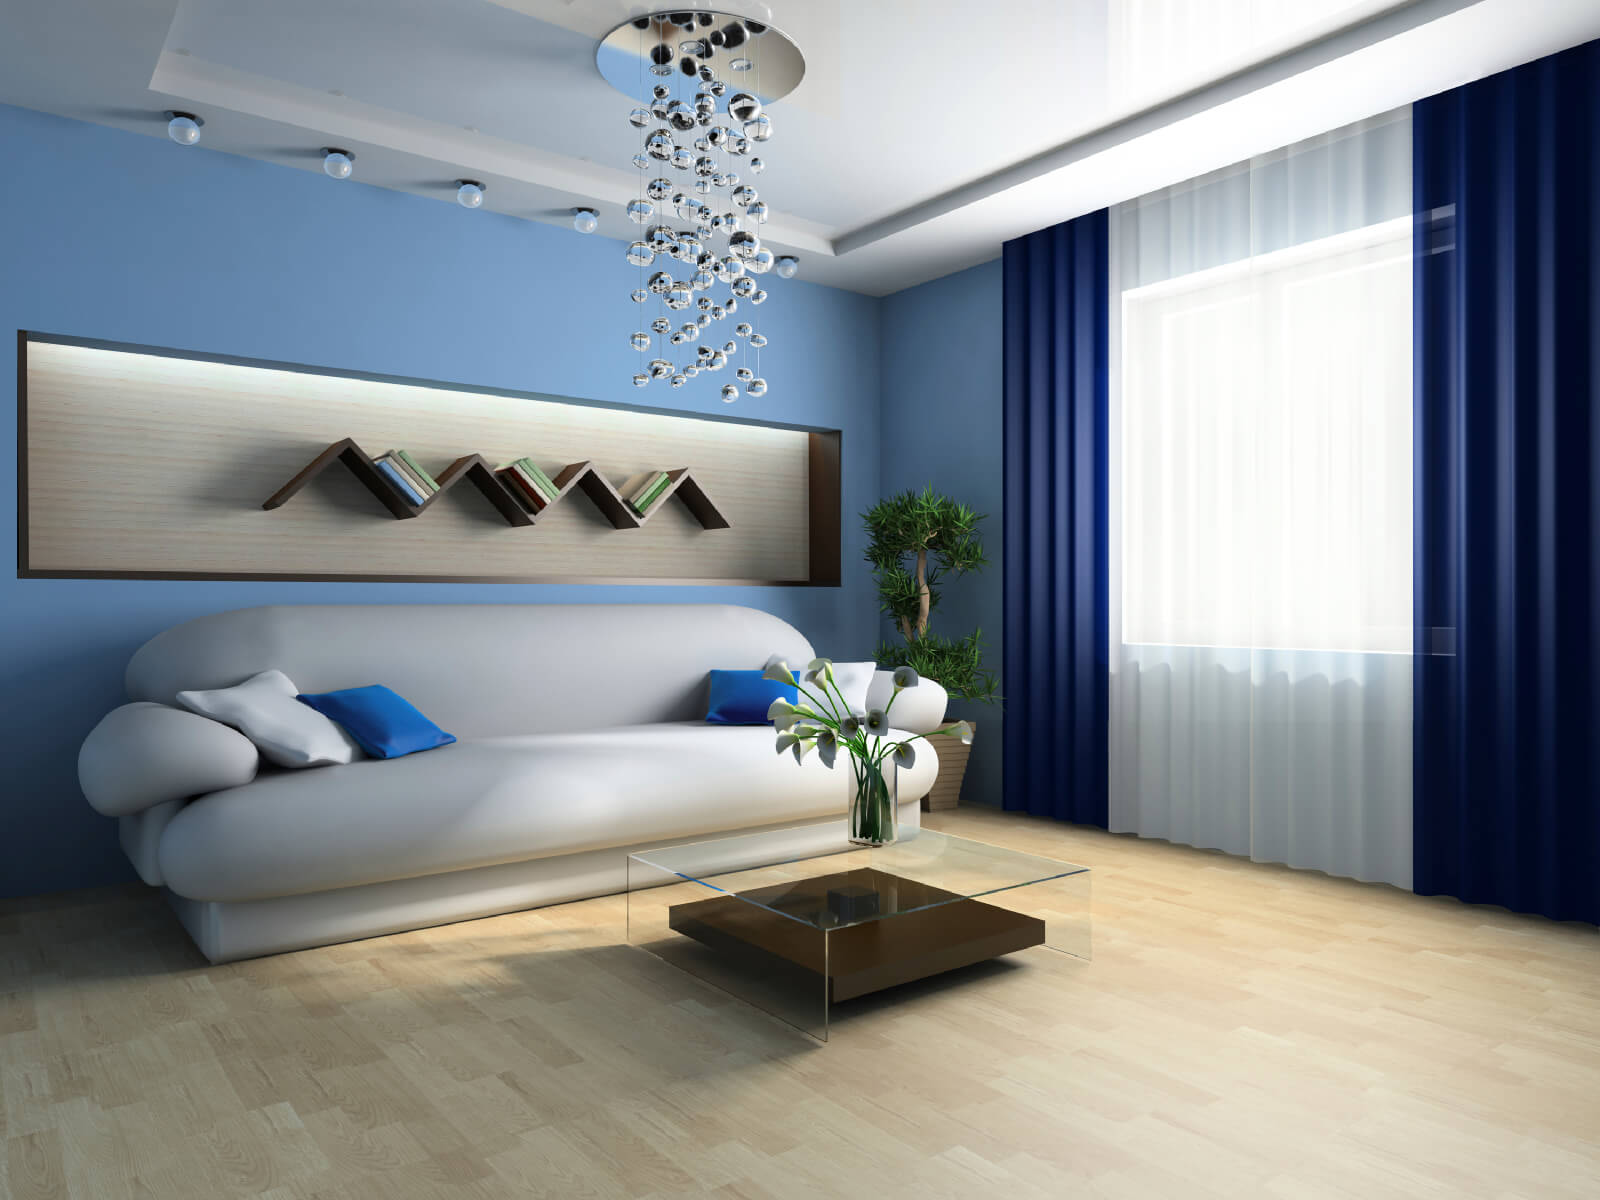 غرفة المعيشة بألوان زرقاء بساطتها